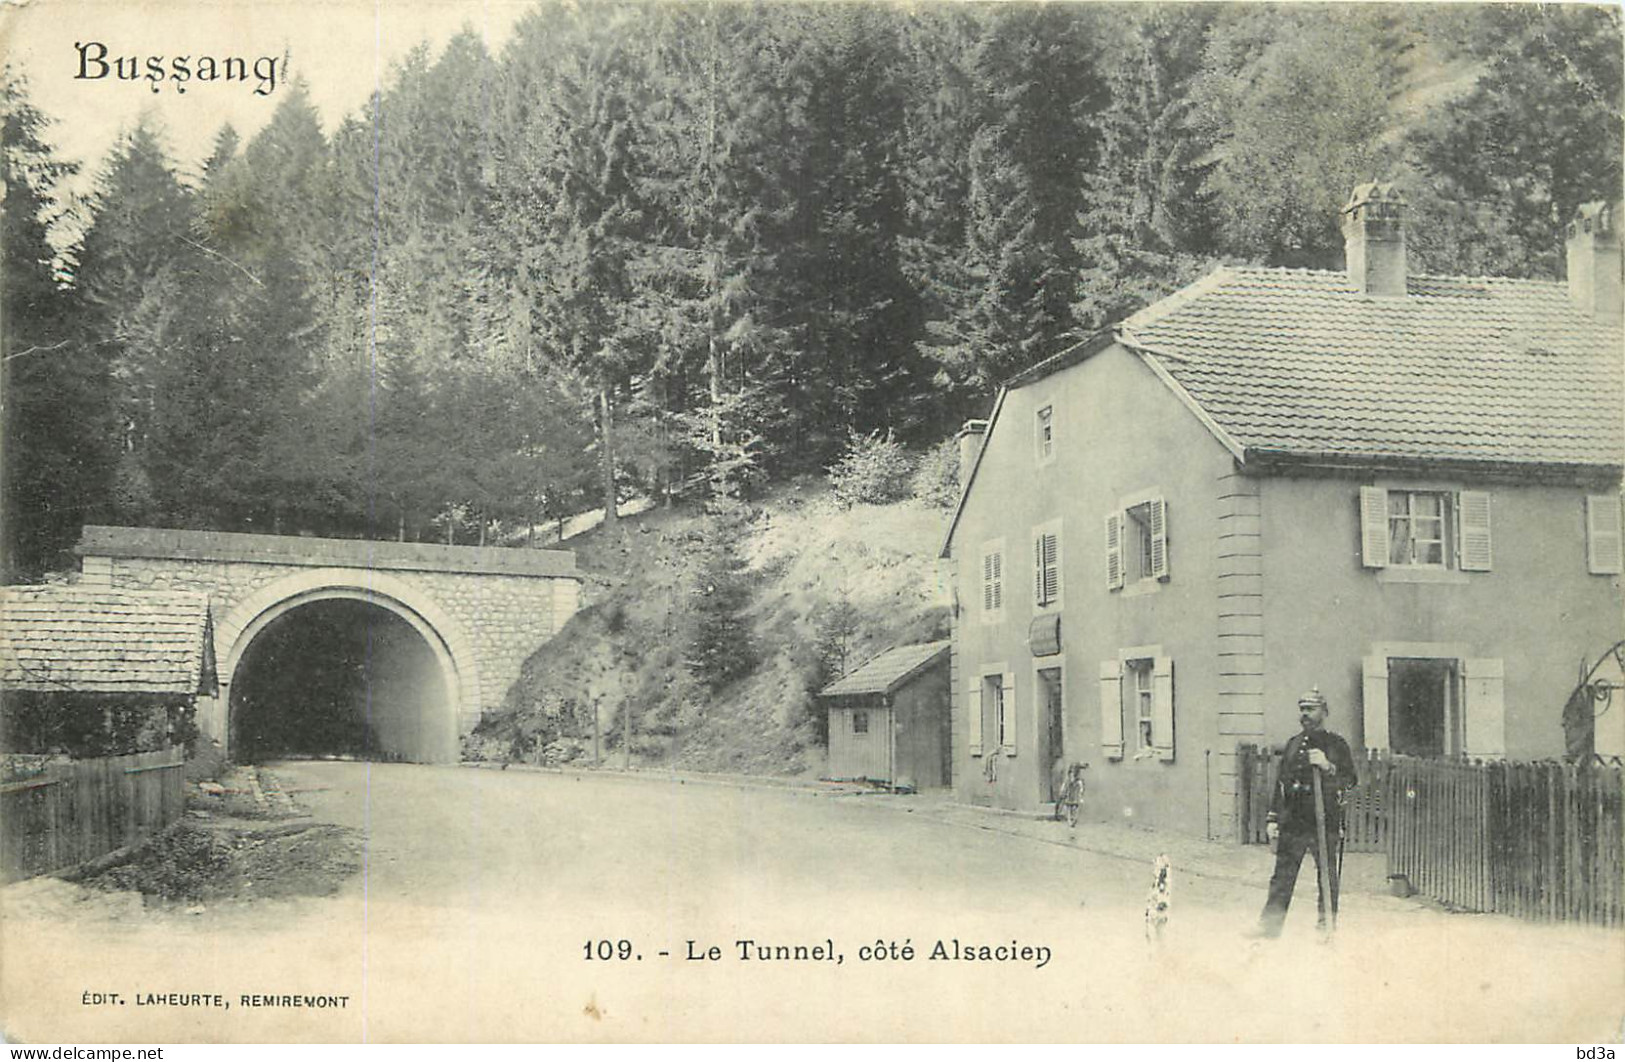  88  BUSSANG   Le Tunnel Coté Alsacien - Bussang